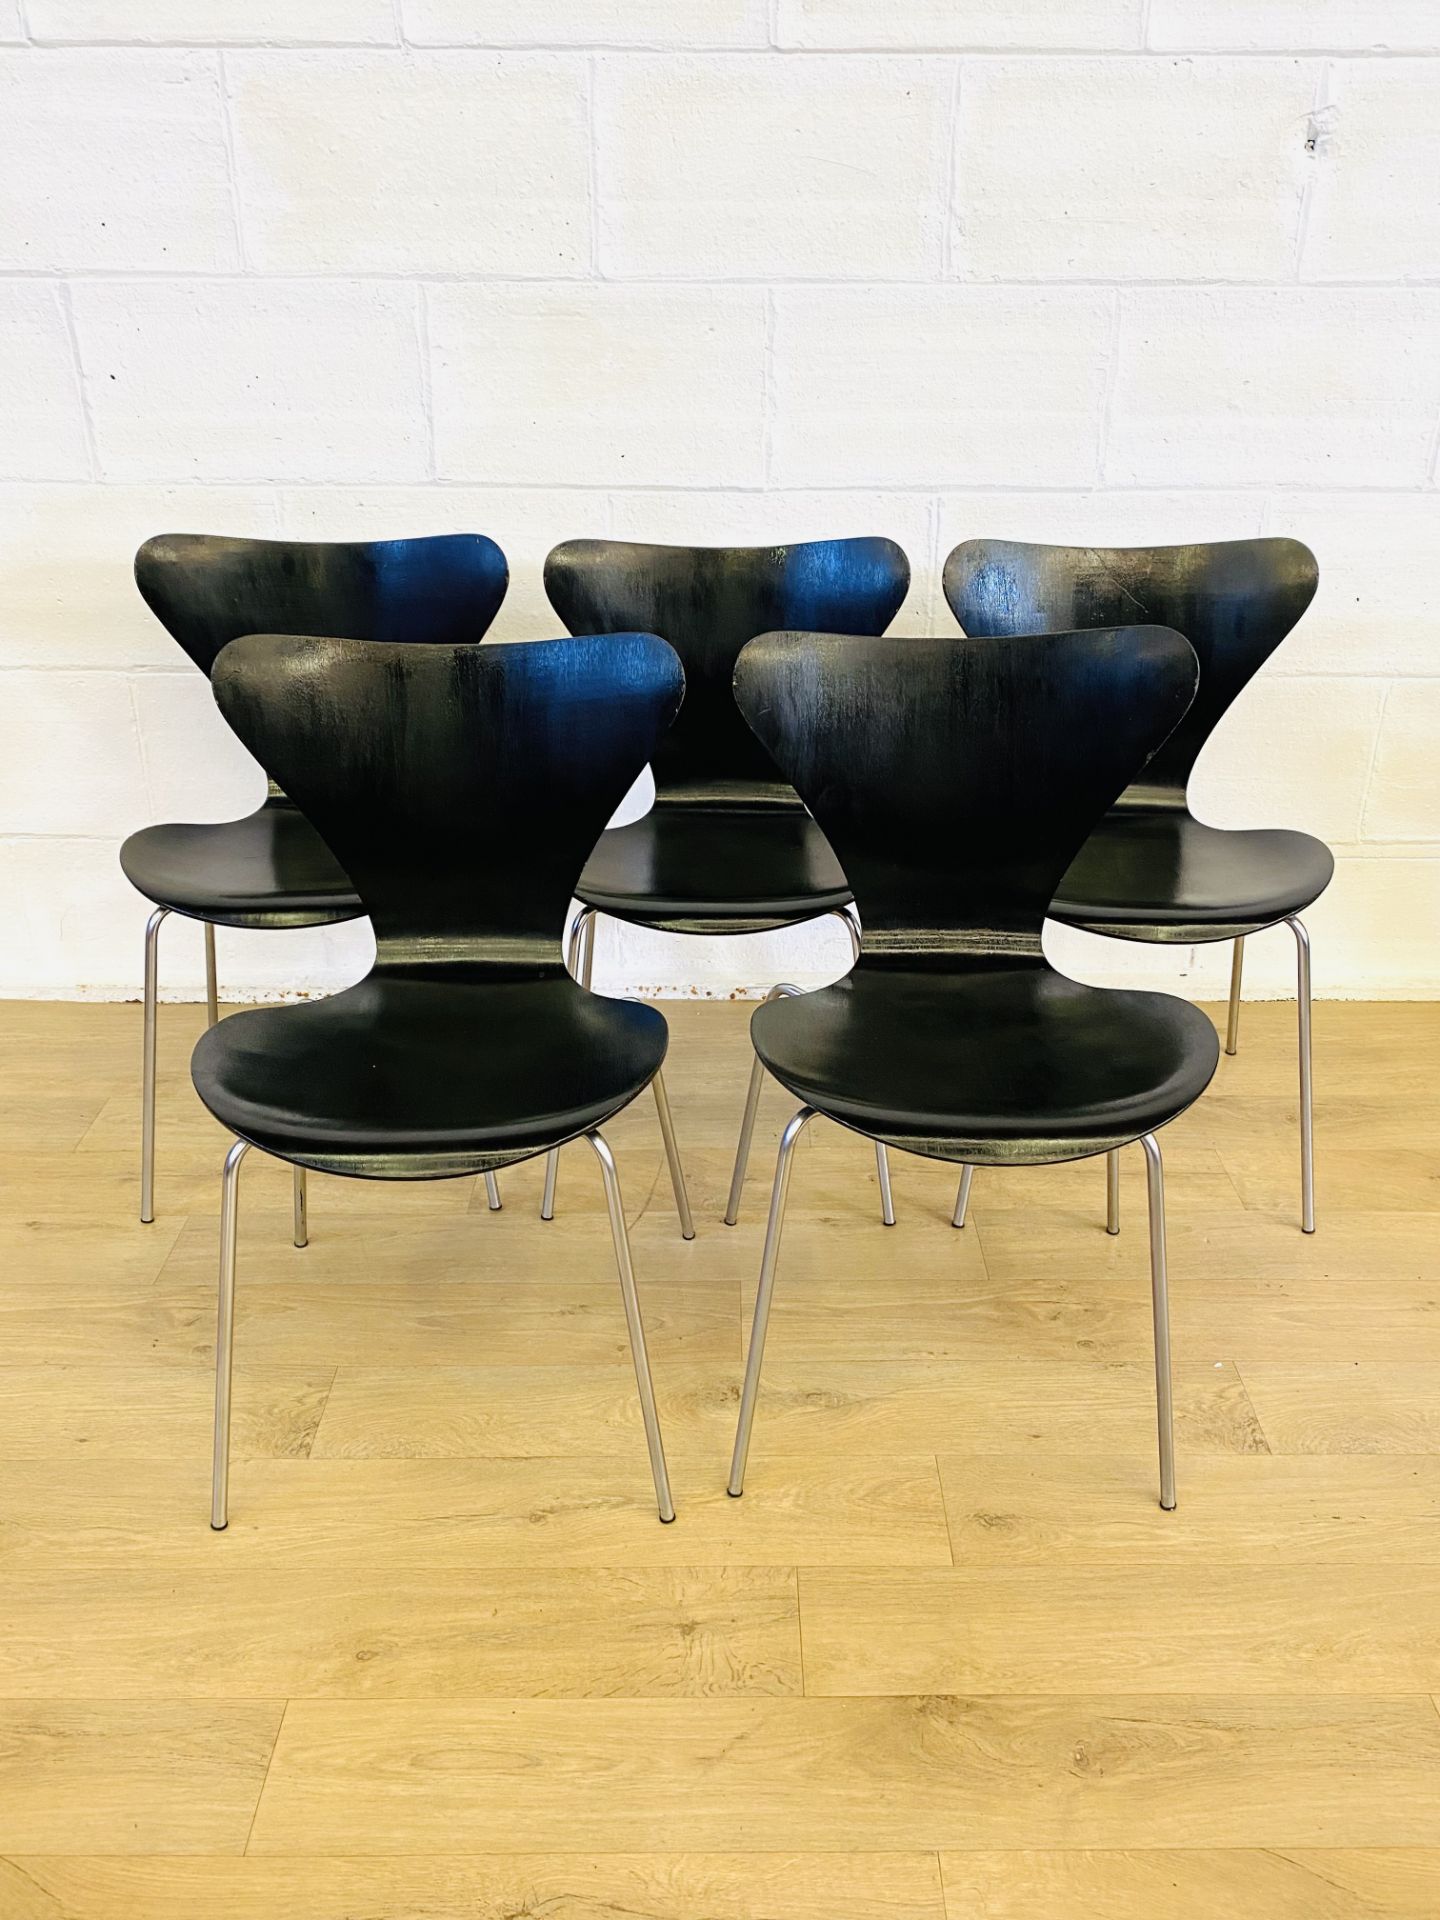 Five black Fritz Hansen chairs